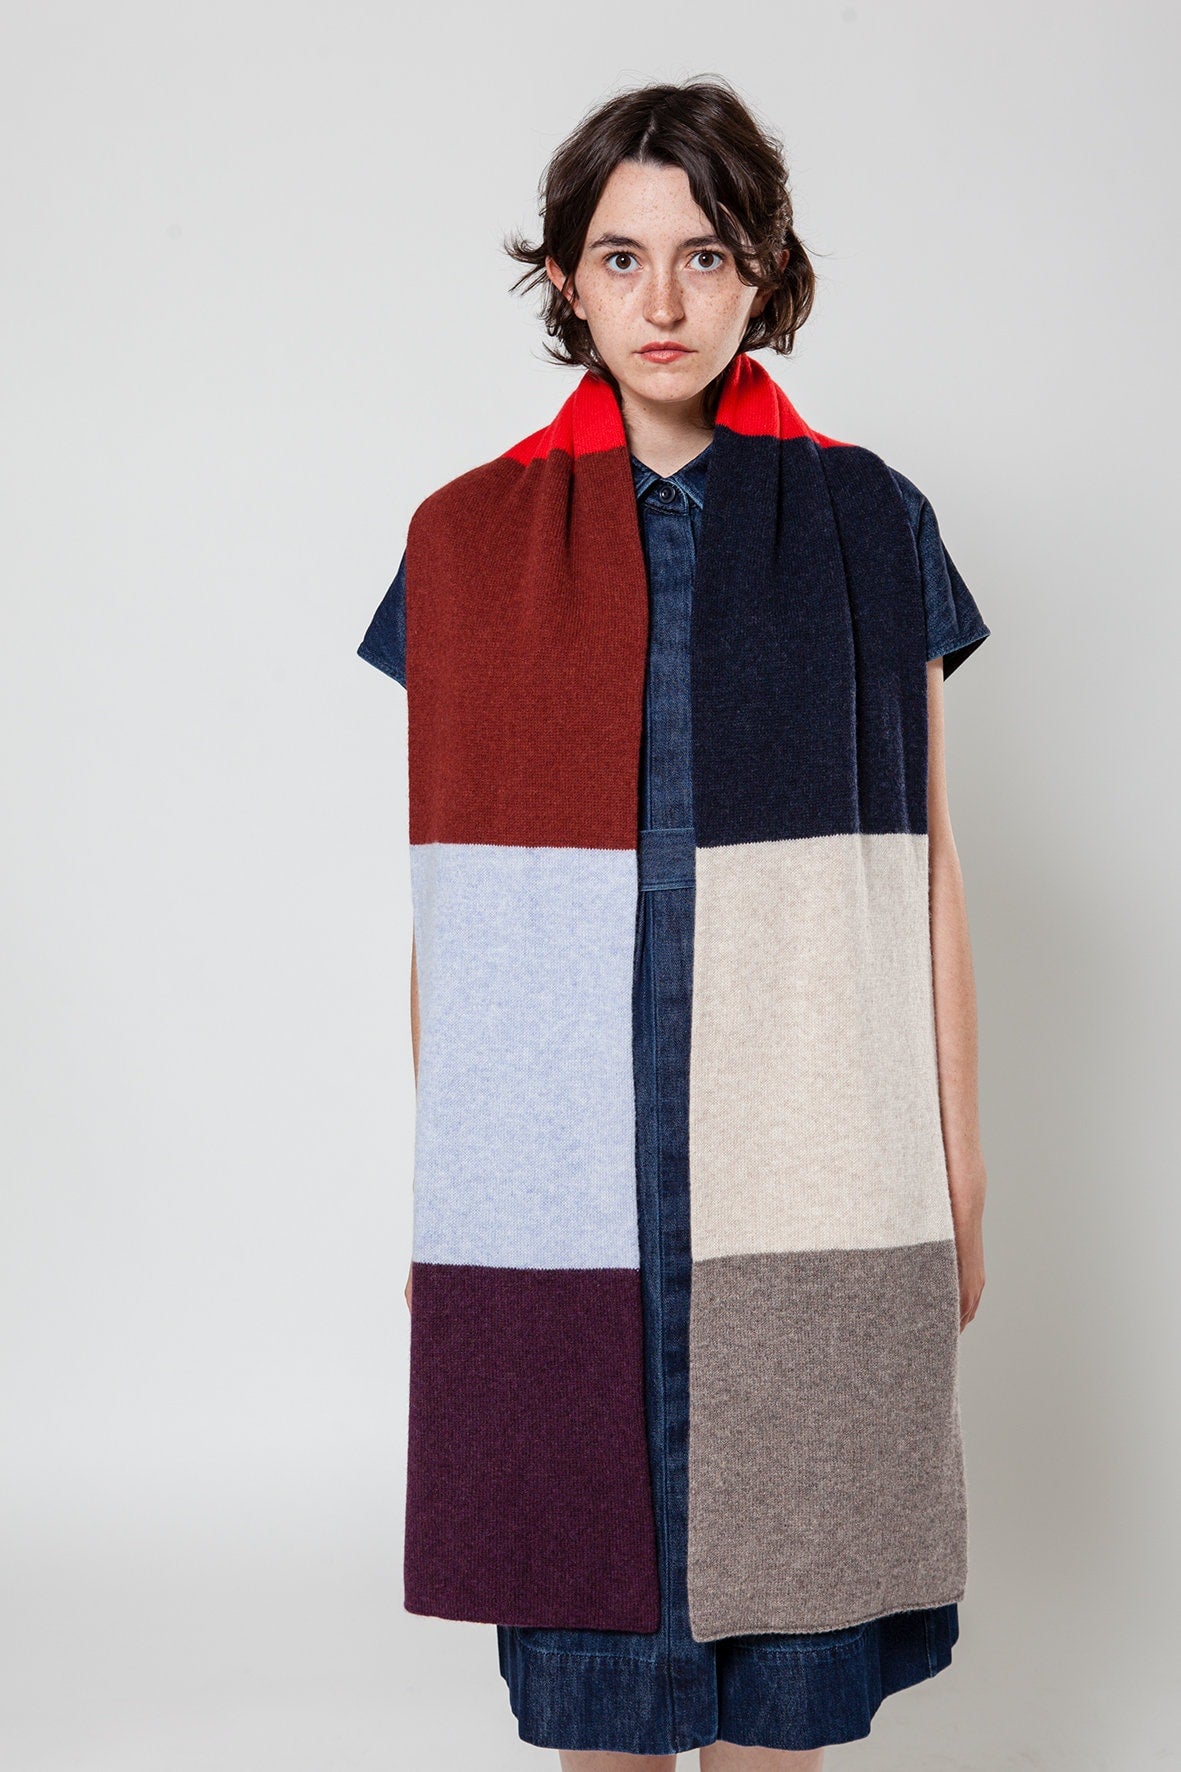 grote gestreepte sjaal met zeven kleuren